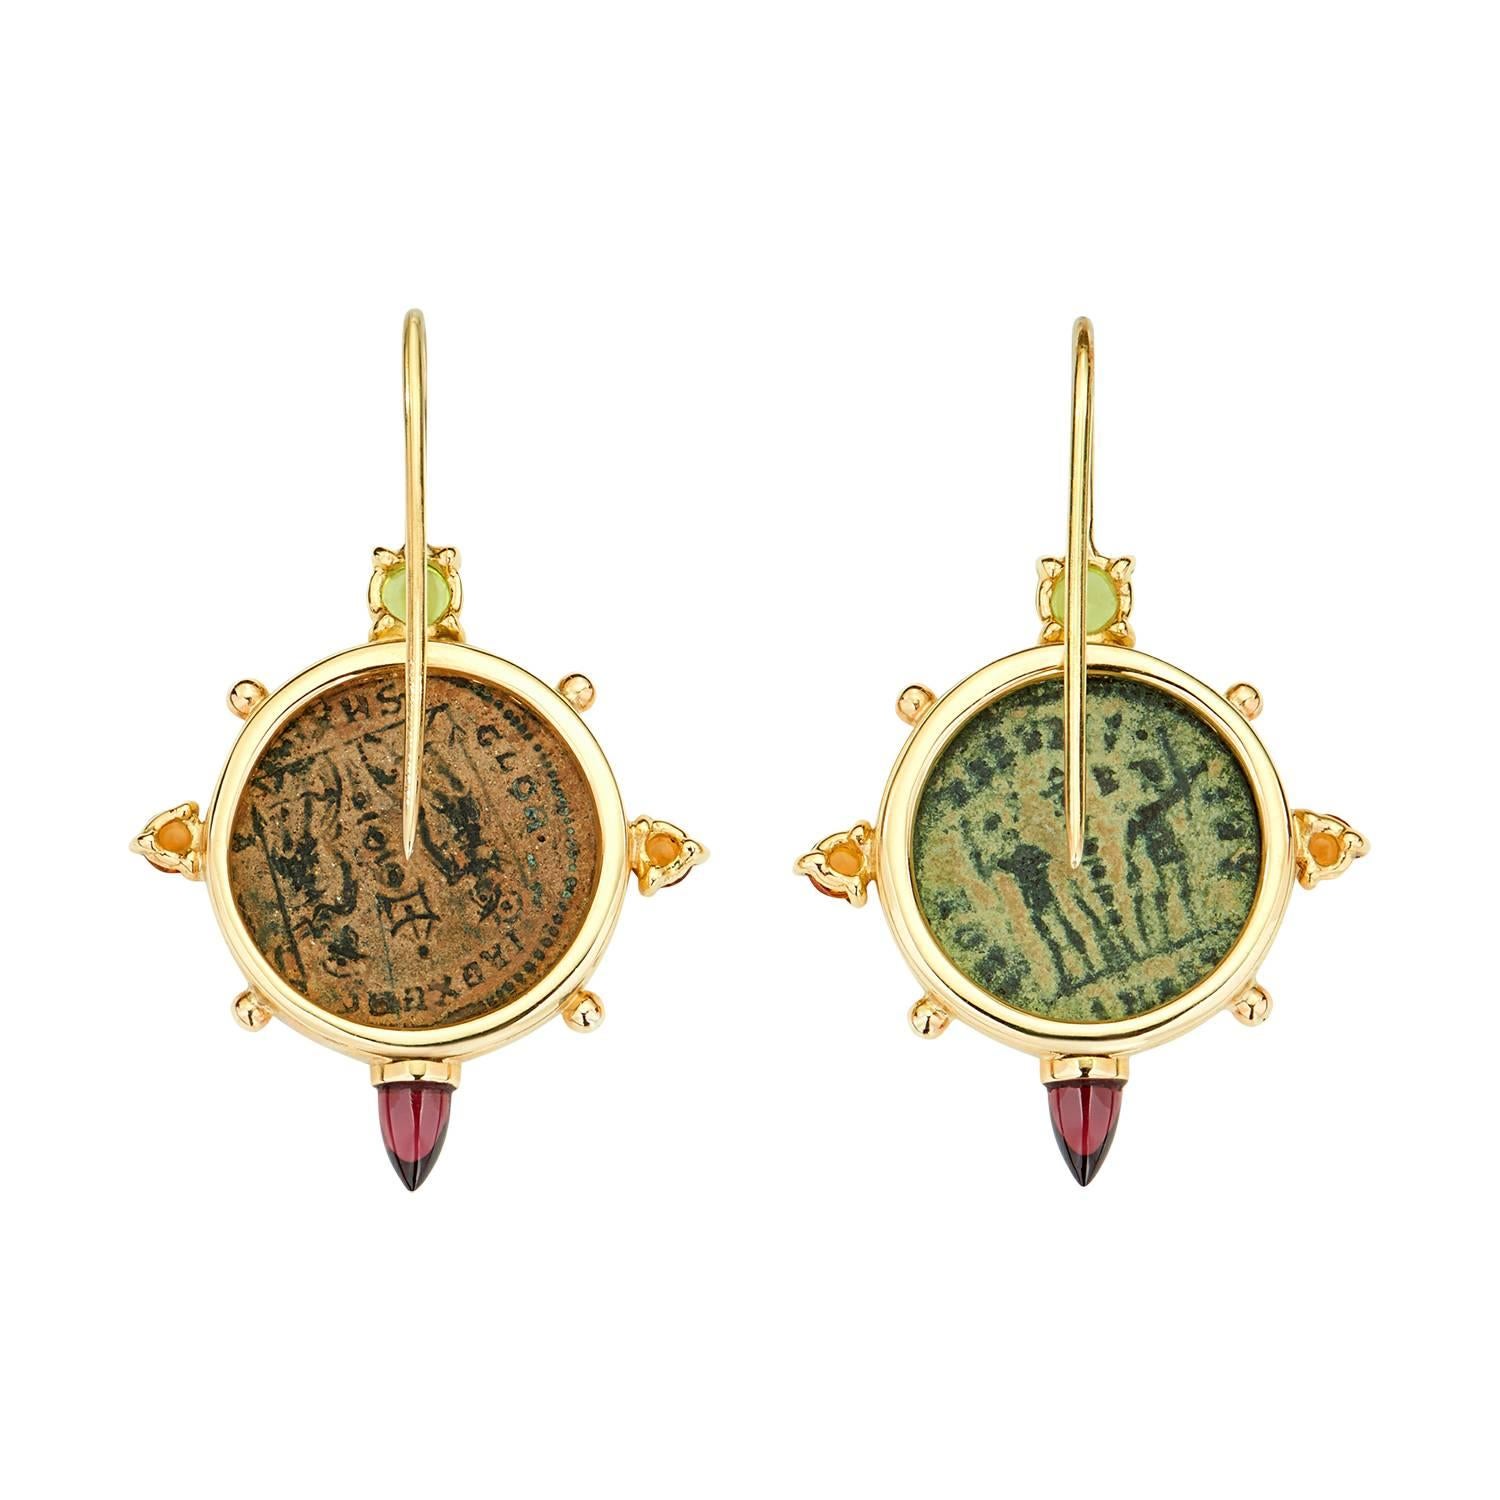 Ces boucles d'oreilles en forme de pièces de monnaie Dubini, issues de la collection 